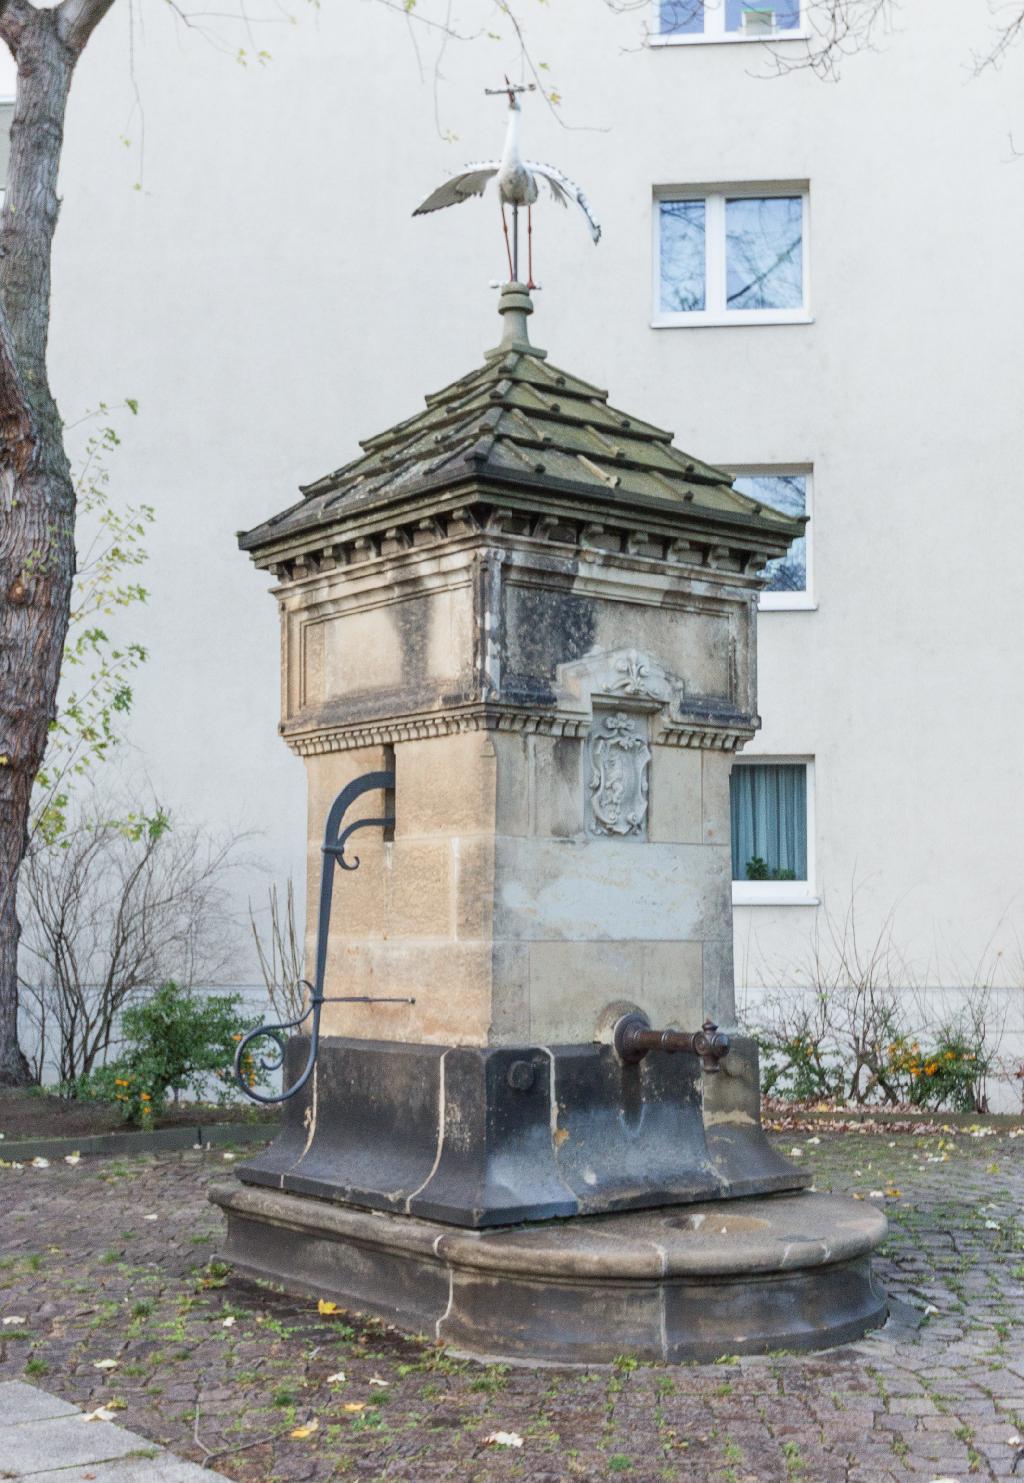 Queckbrunnen in Dresden